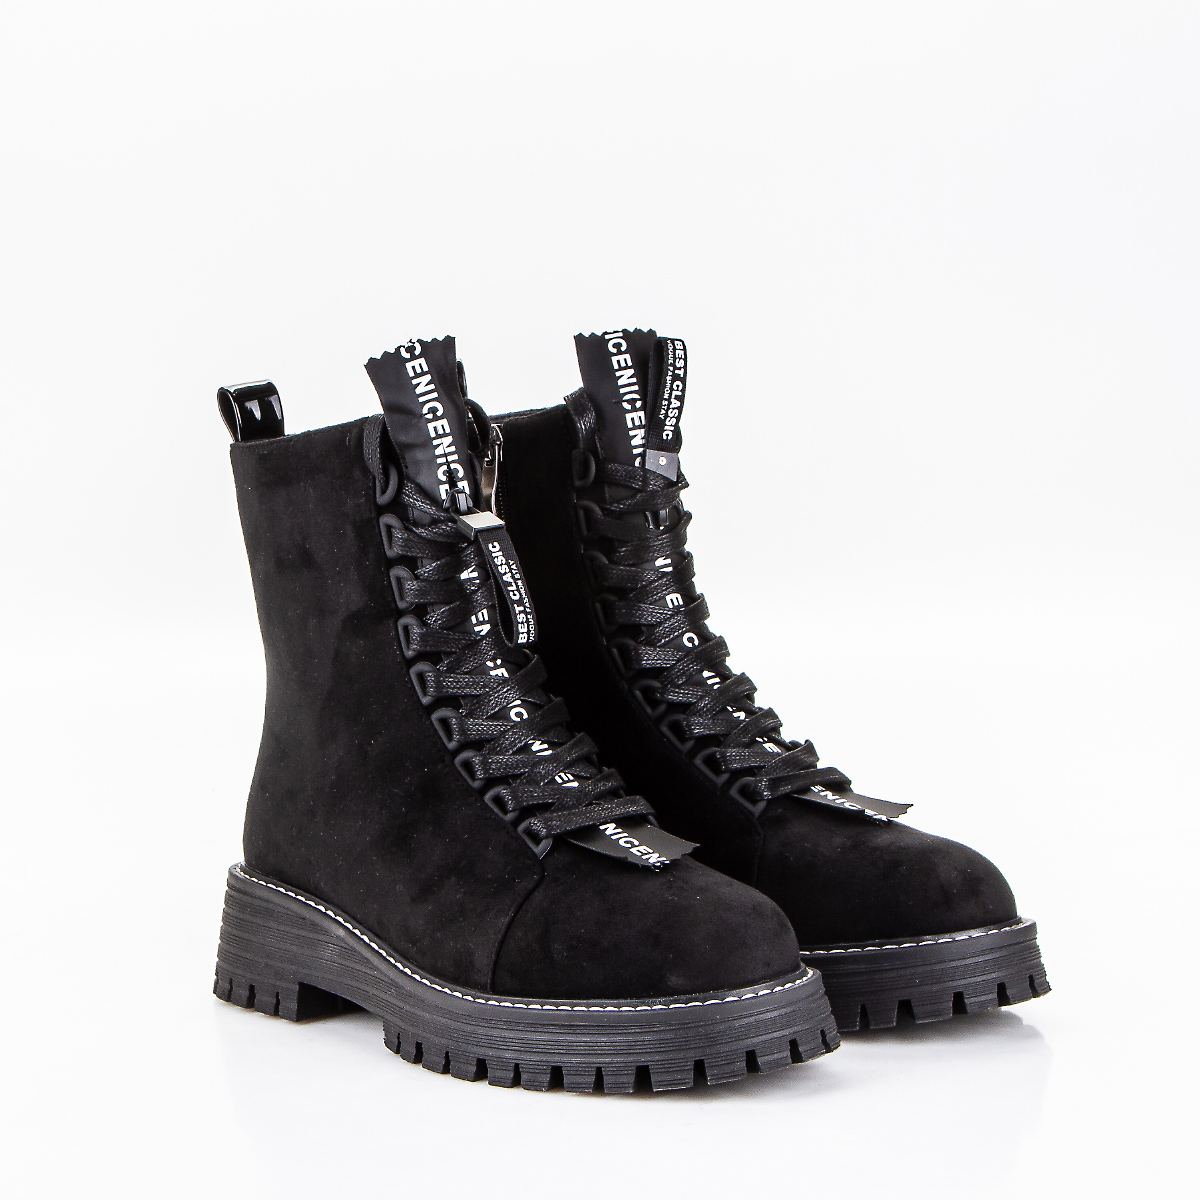 Фото Ботинки женские K908-2 black купить на lauf.shoes